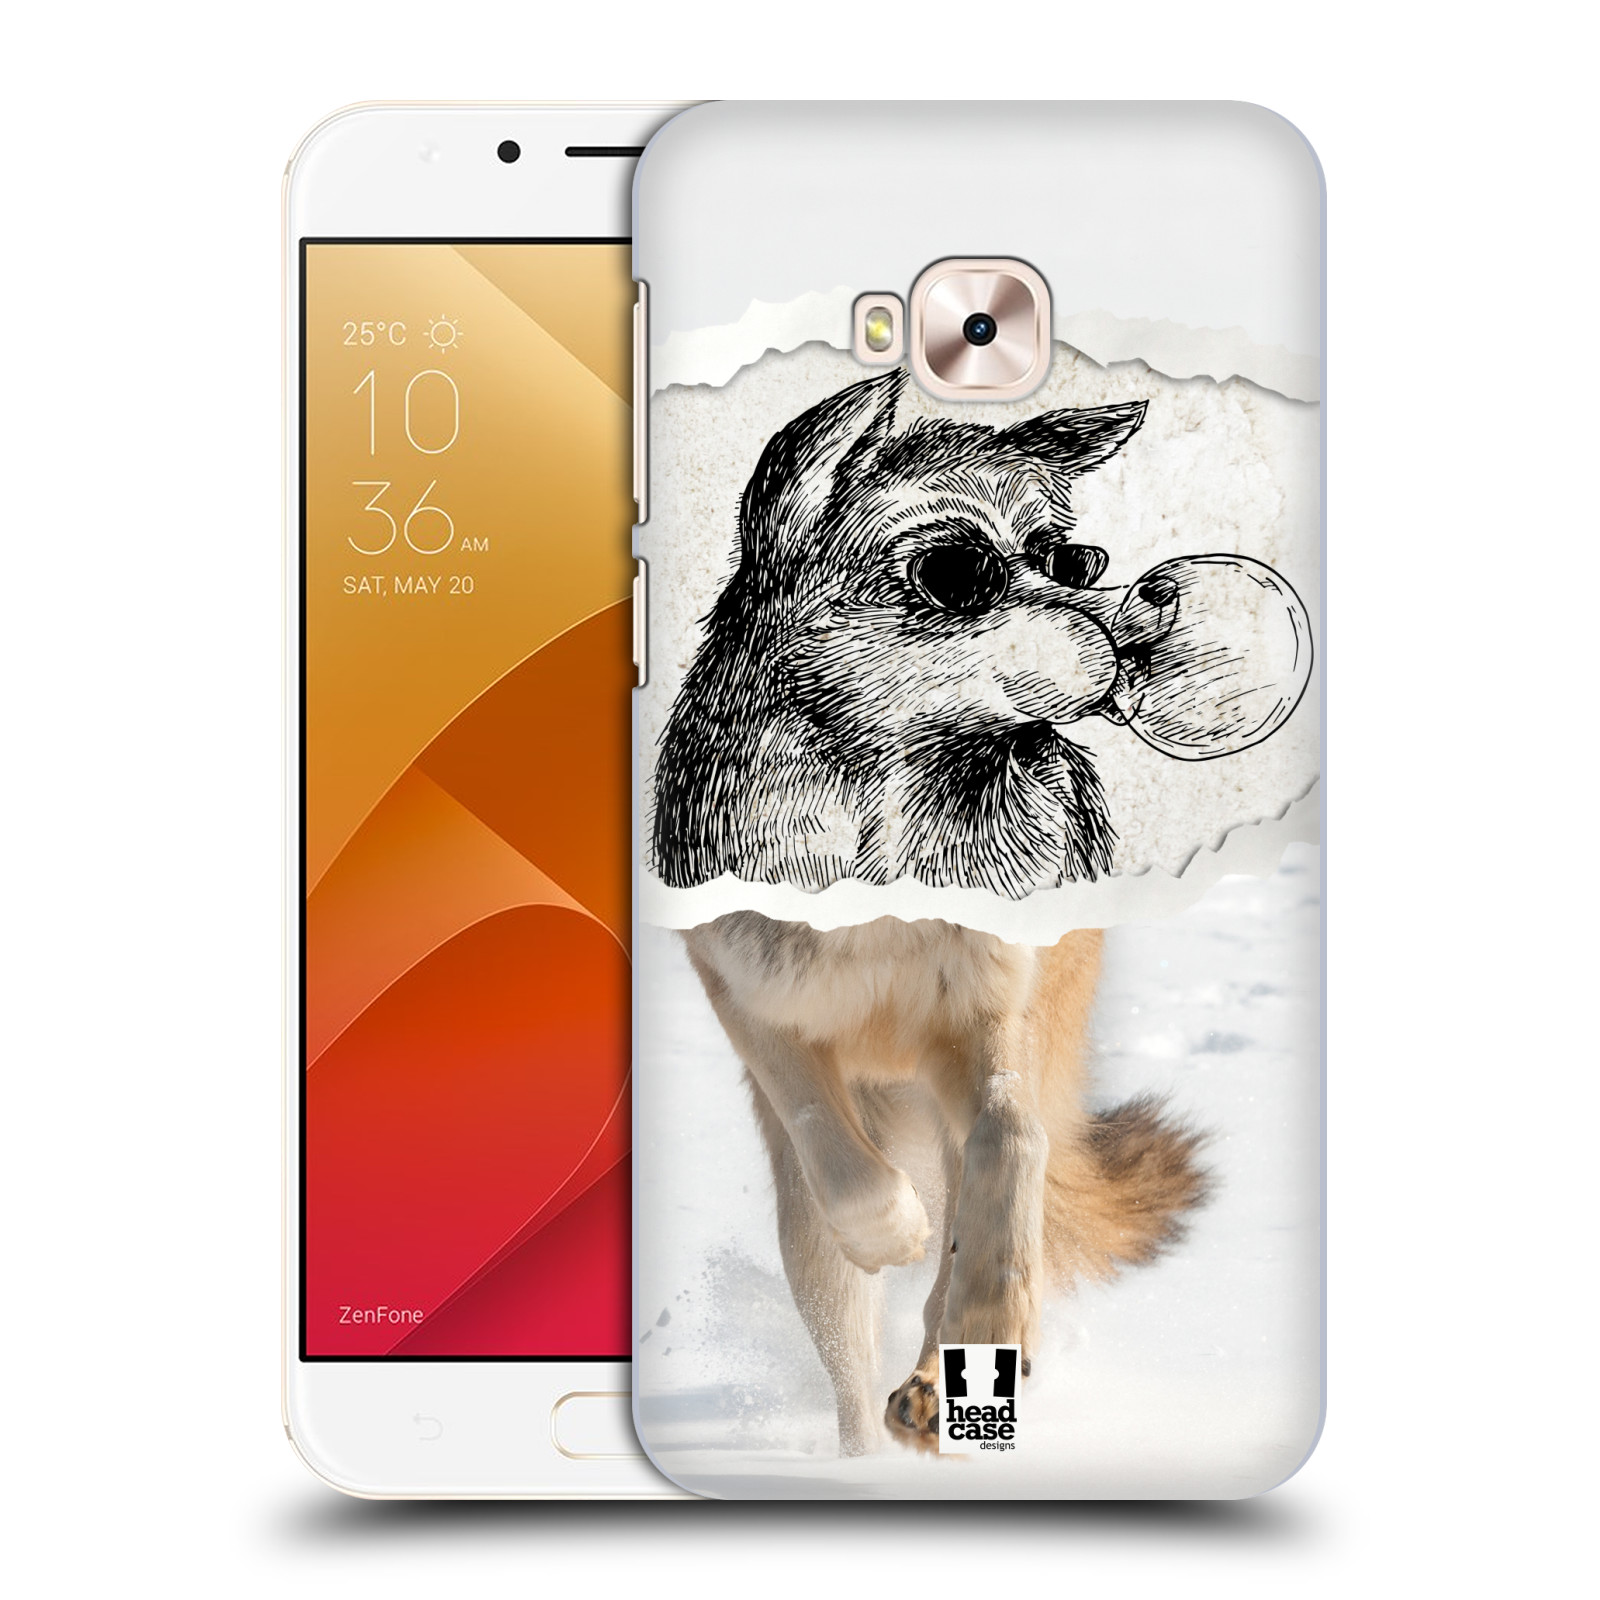 HEAD CASE plastový obal na mobil Asus Zenfone 4 Selfie Pro ZD552KL vzor zvířata koláž vlk pohodář